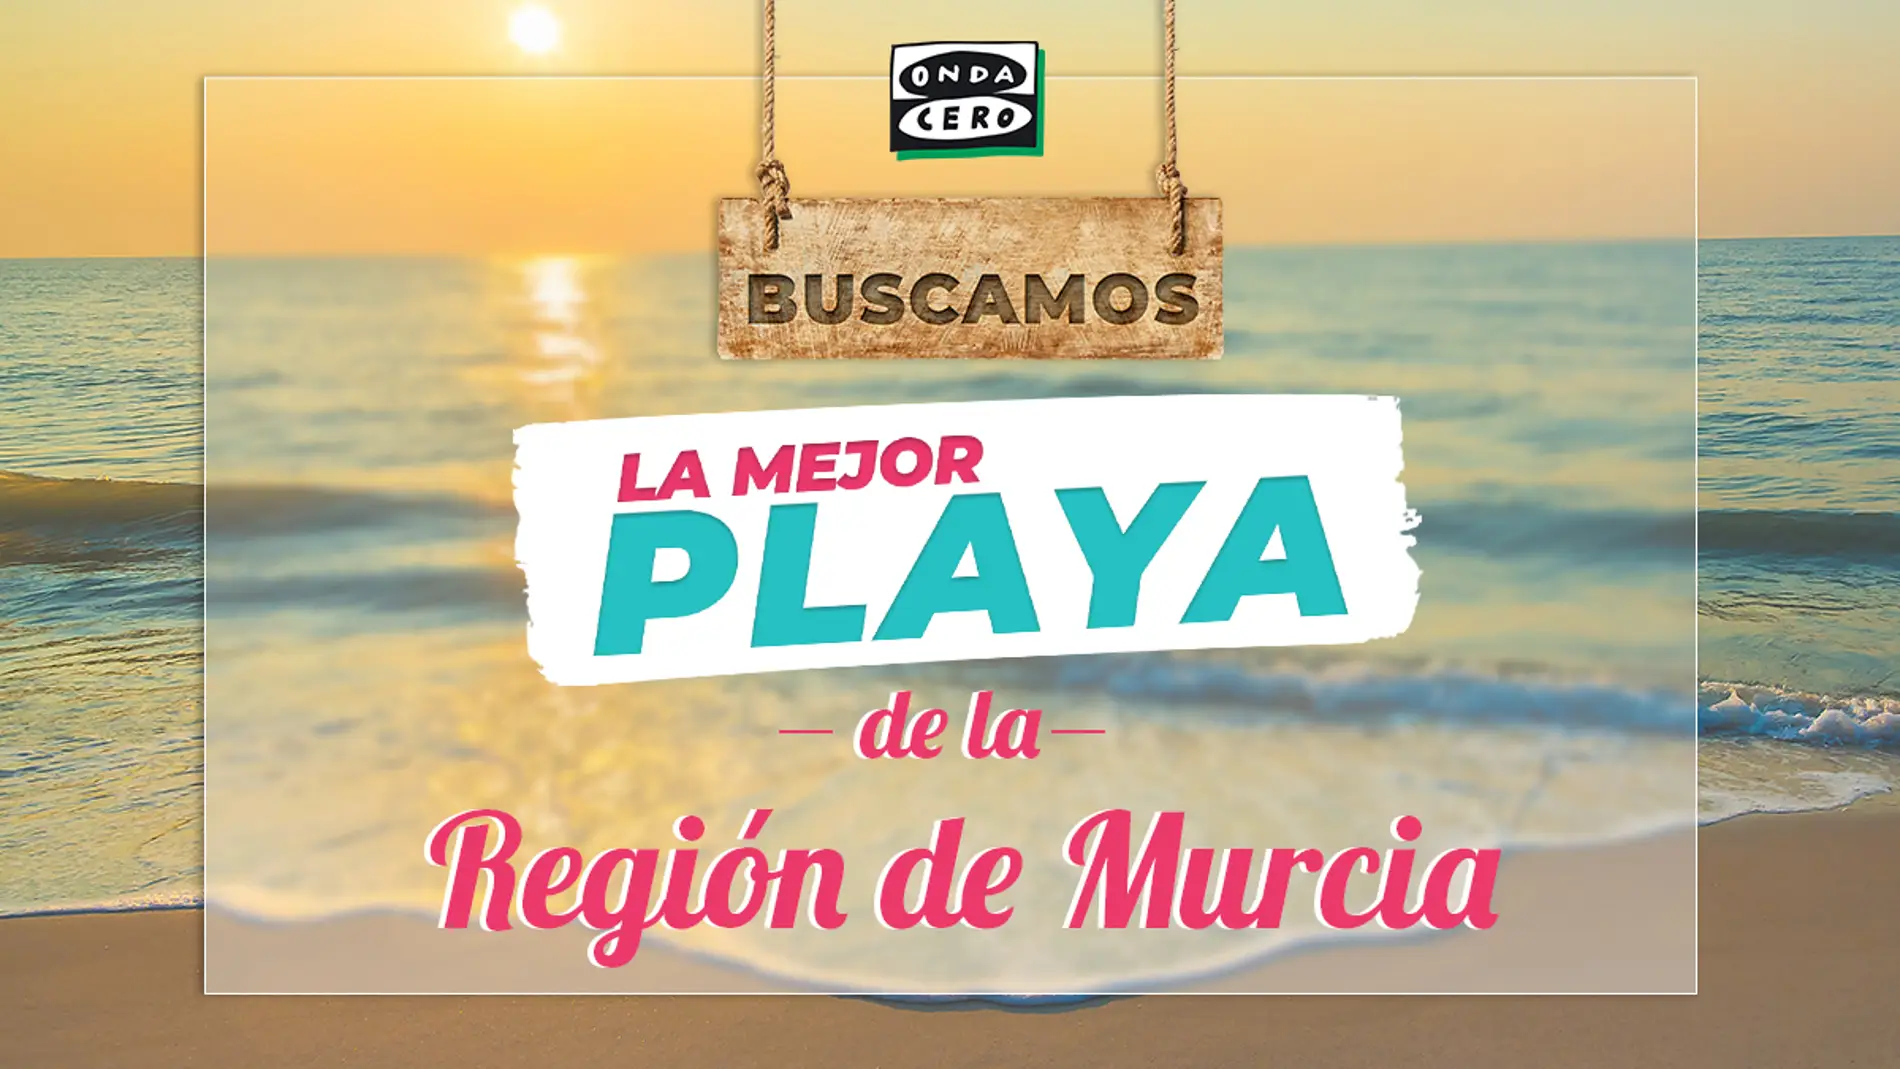 La Mejor Playa de la Región de Murcia